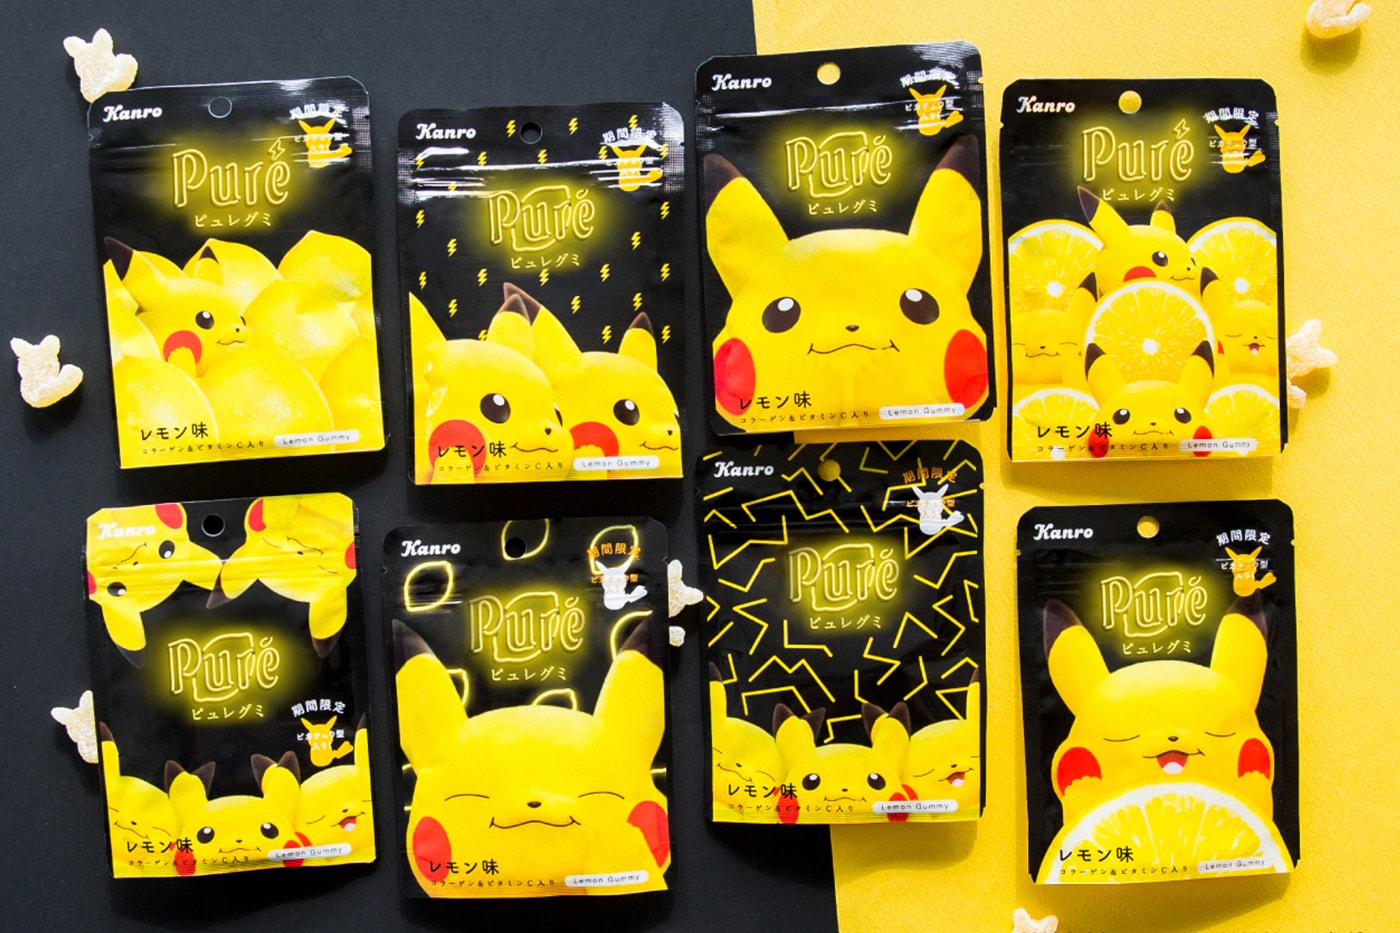 Kanro Puré 推出經典檸檬口味 Pikachu 主題軟糖